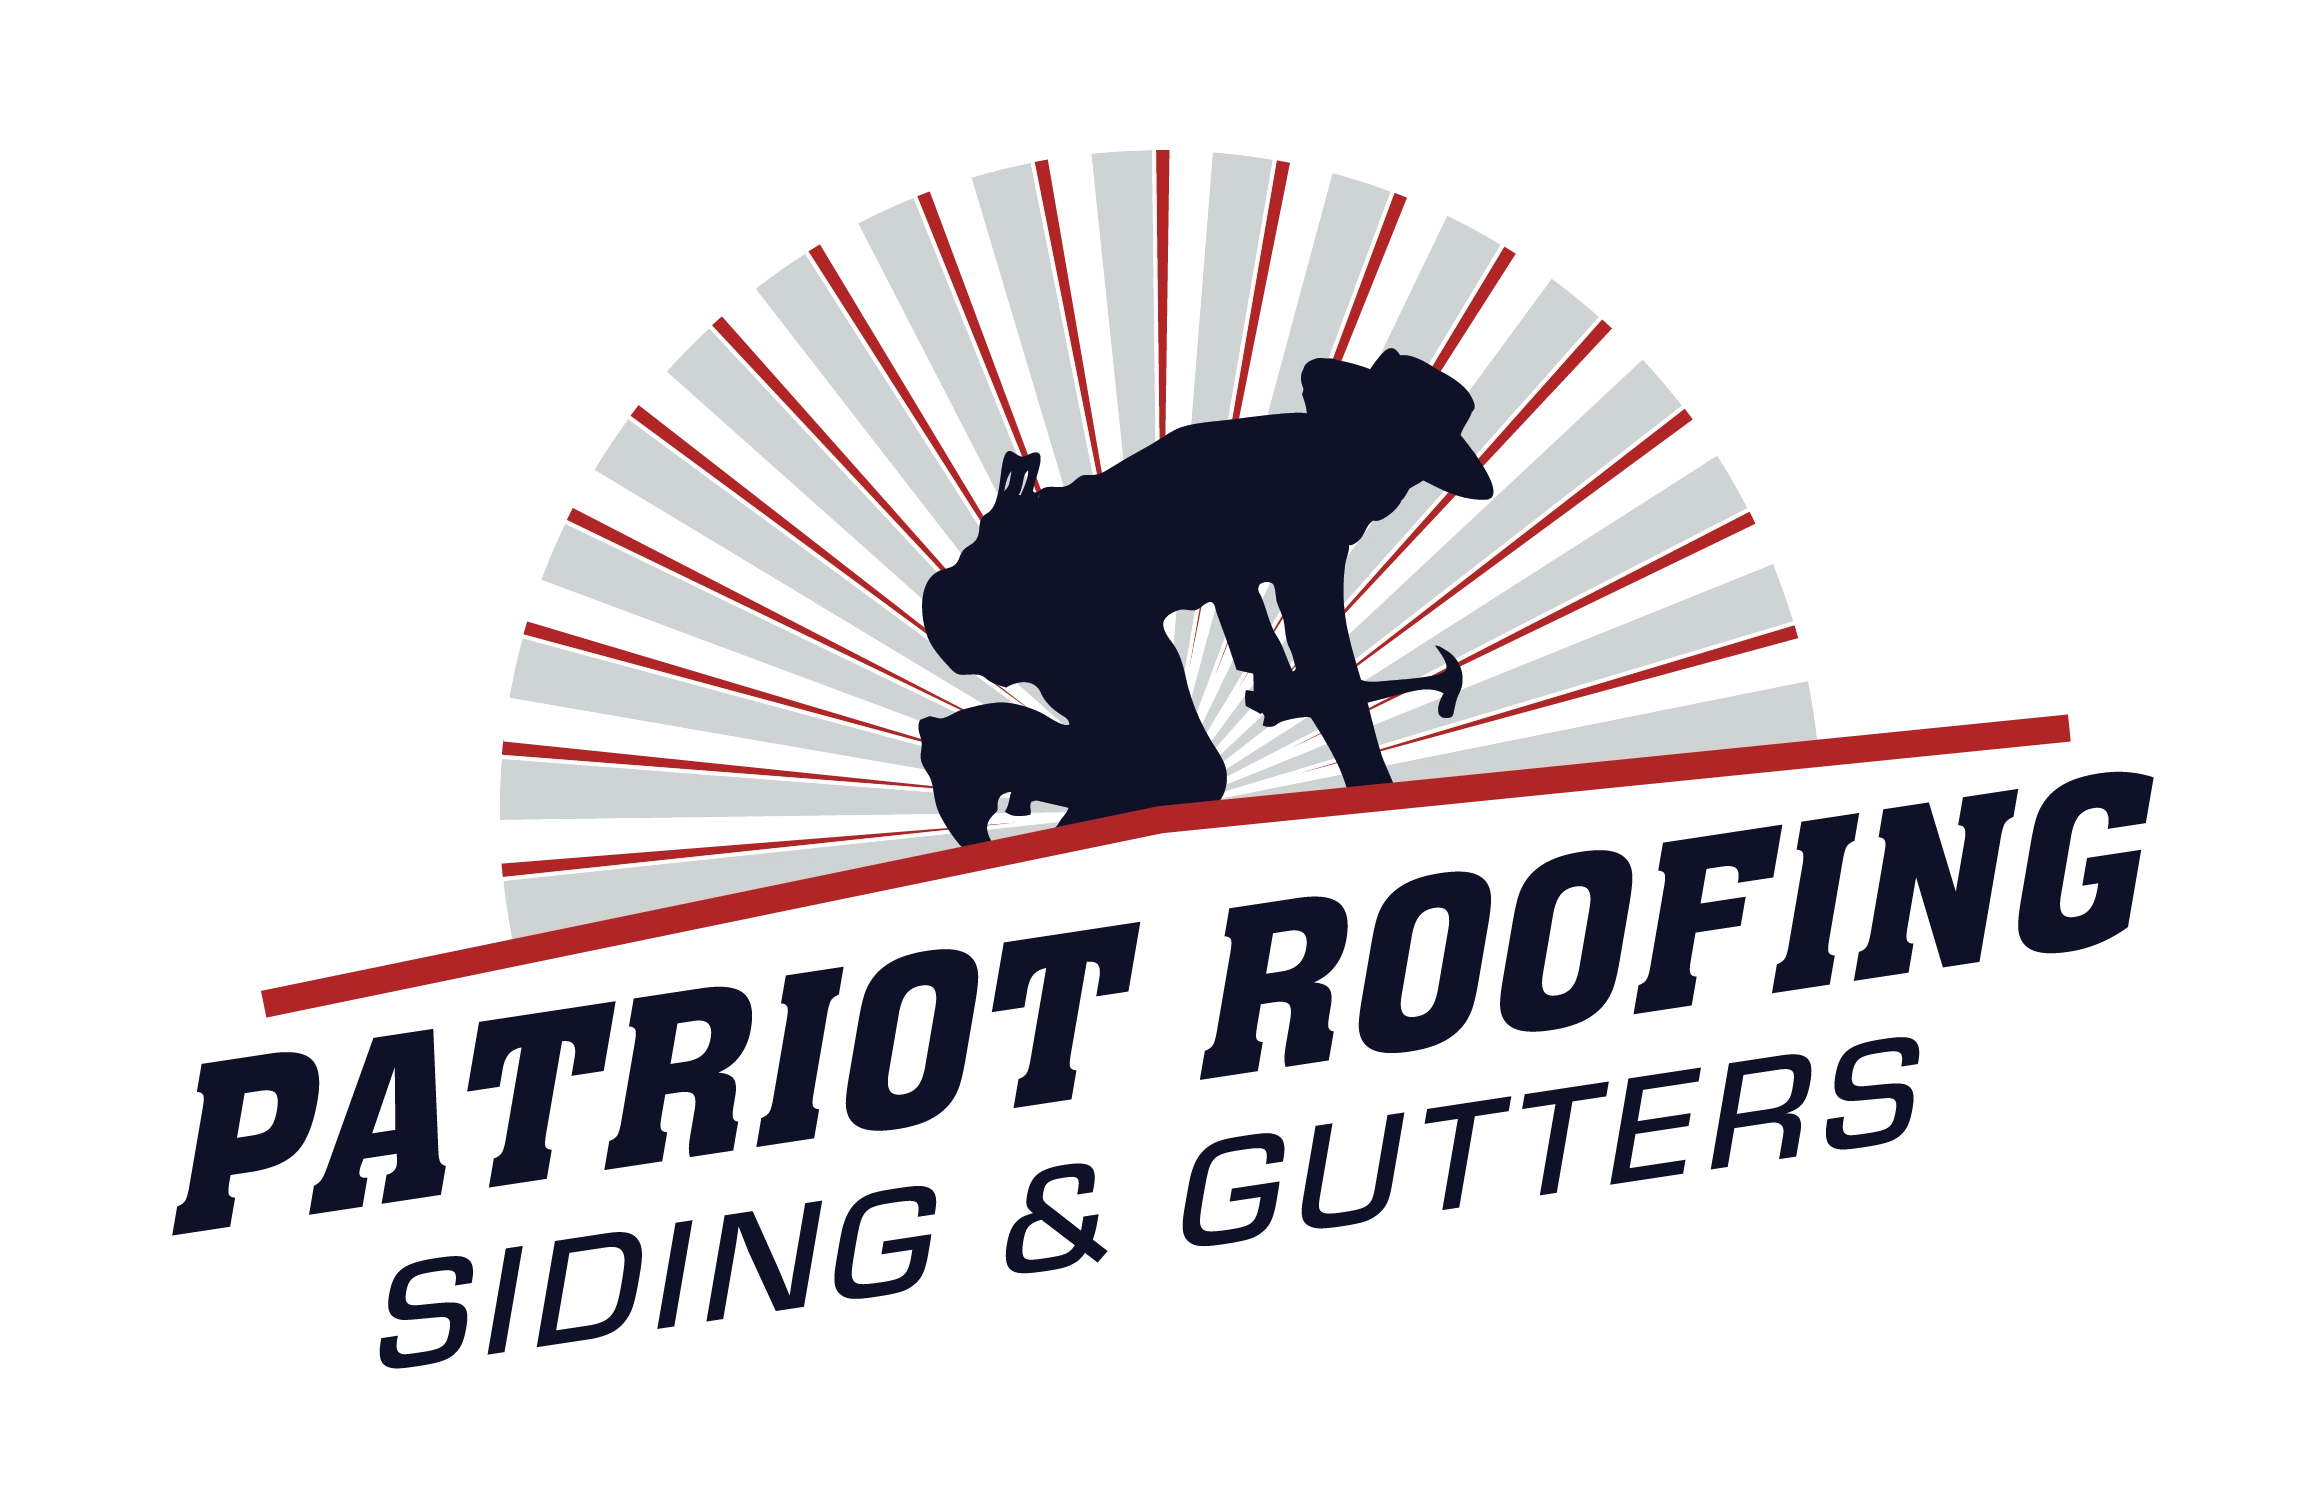 Patriot Roofing LLC Logo